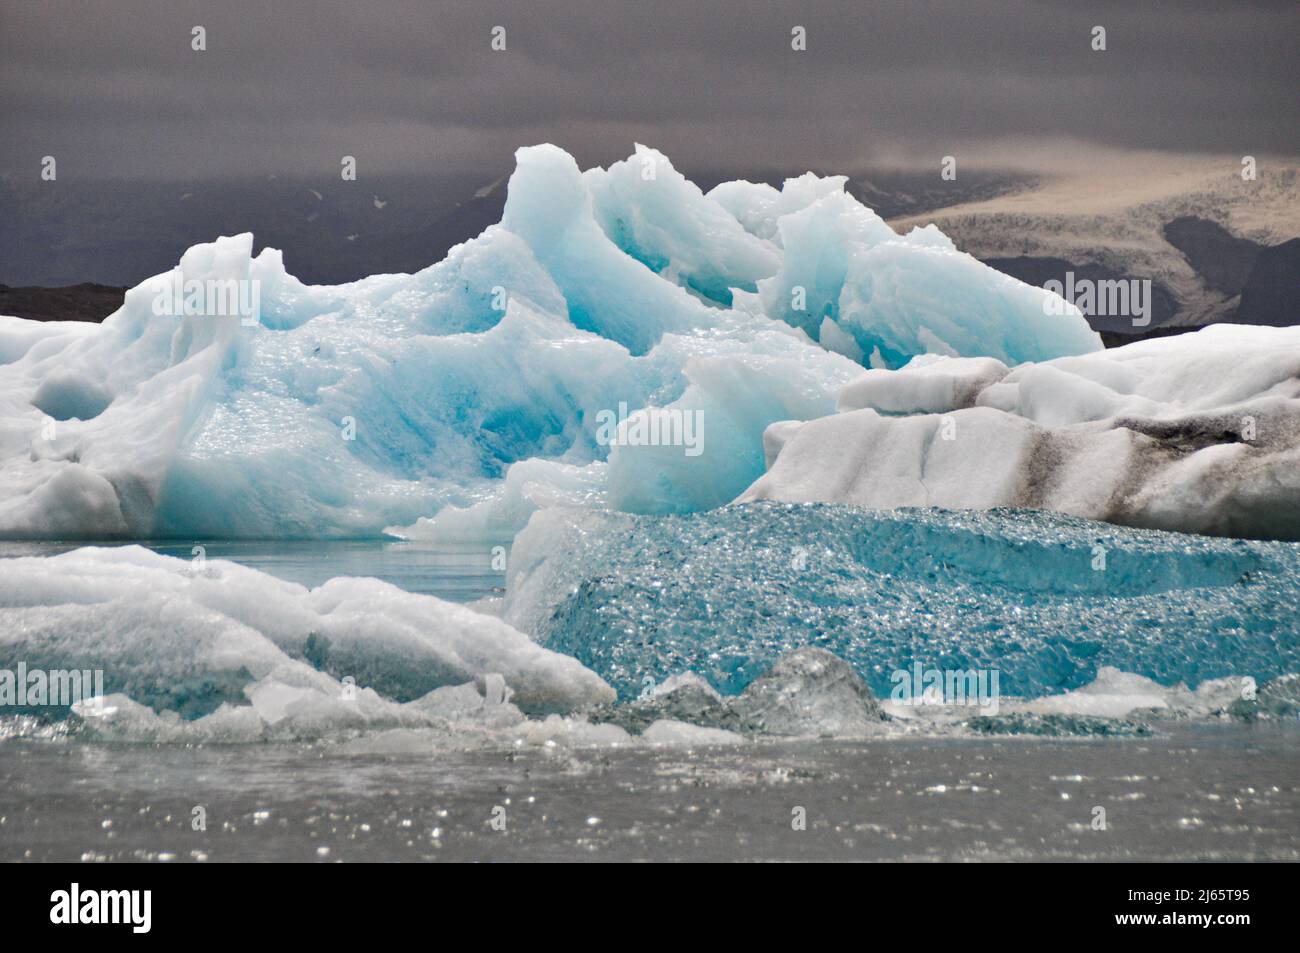 Blaueis in der Gletscherlagune Jökulsárlón, Island - Eiszagone / Gletscherlagune in Island Stockfoto